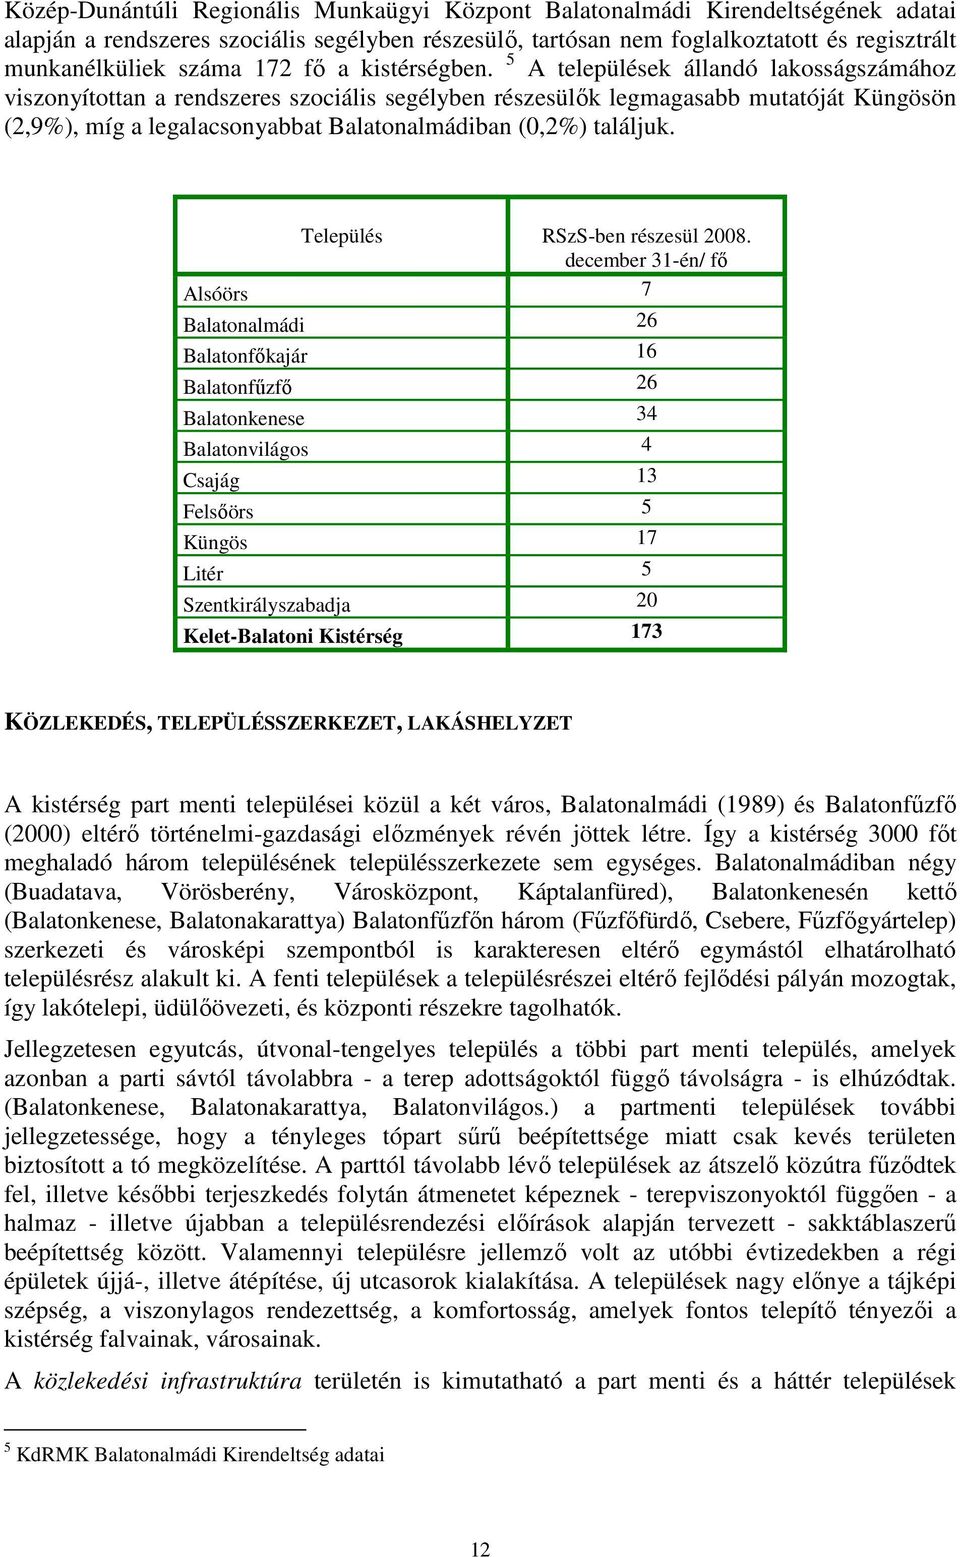 5 A települések állandó lakosságszámához viszonyítottan a rendszeres szociális segélyben részesülık legmagasabb mutatóját Küngösön (2,9%), míg a legalacsonyabbat Balatonalmádiban (0,2%) találjuk.